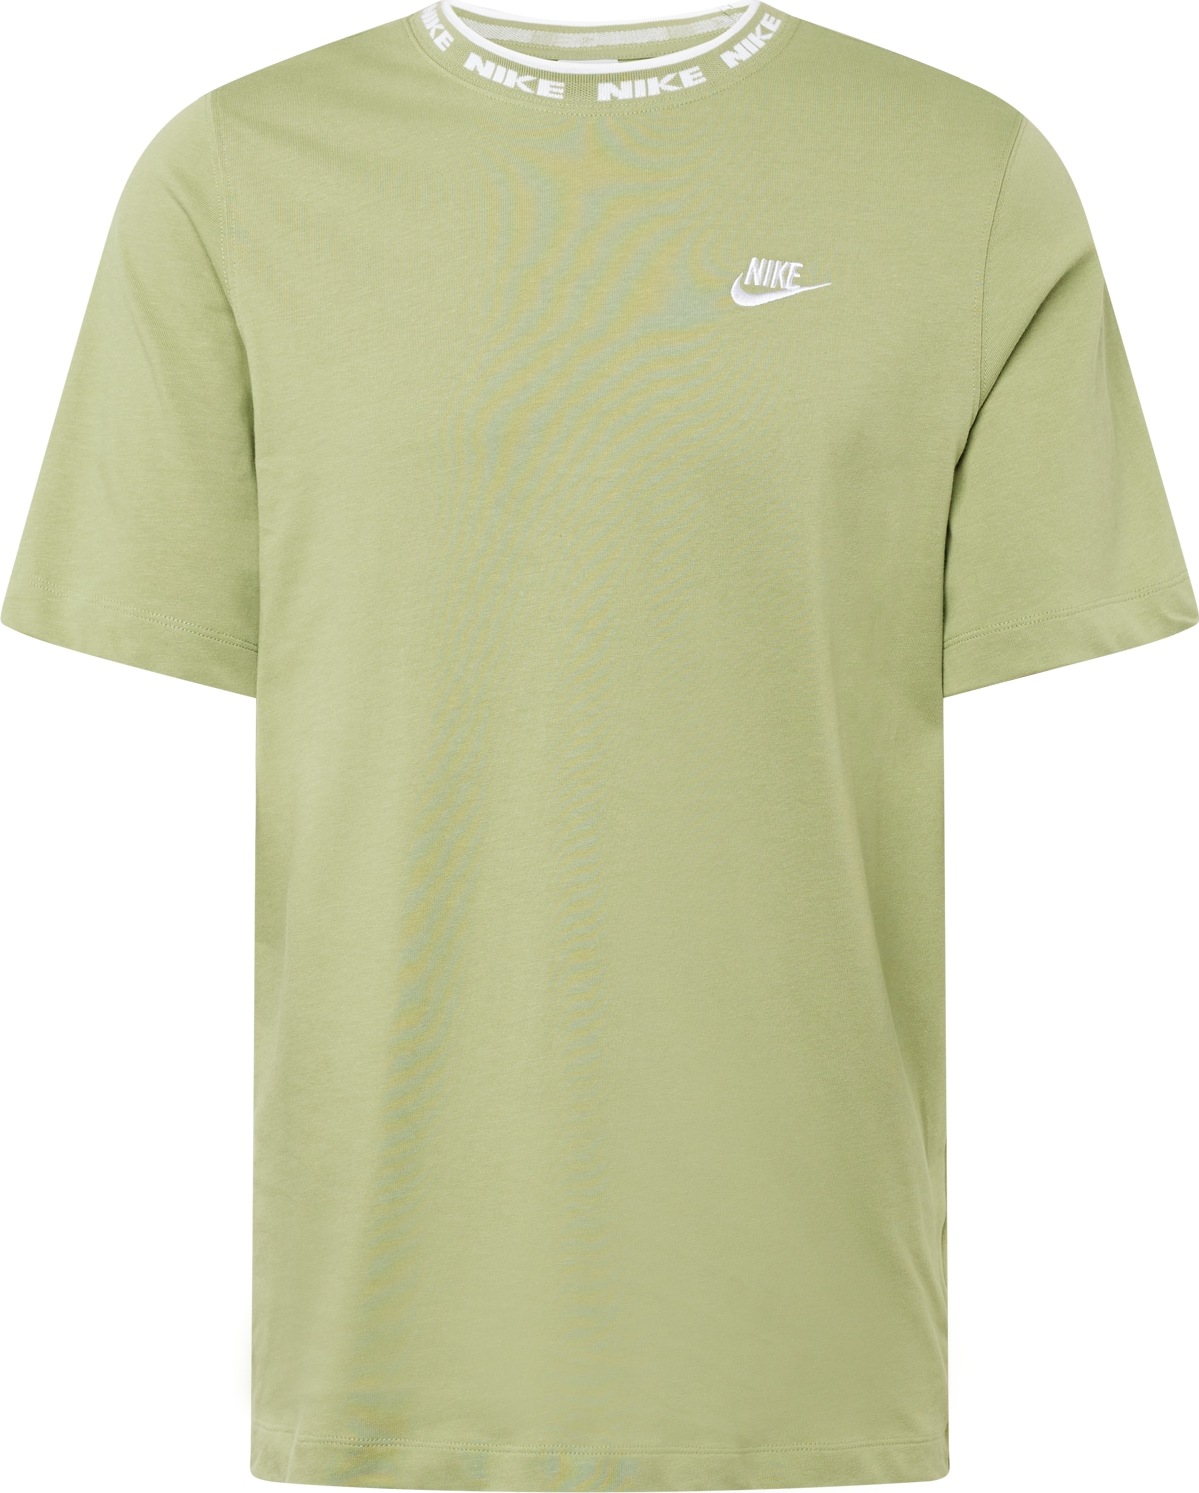 Tričko Nike Sportswear rákos / bílá